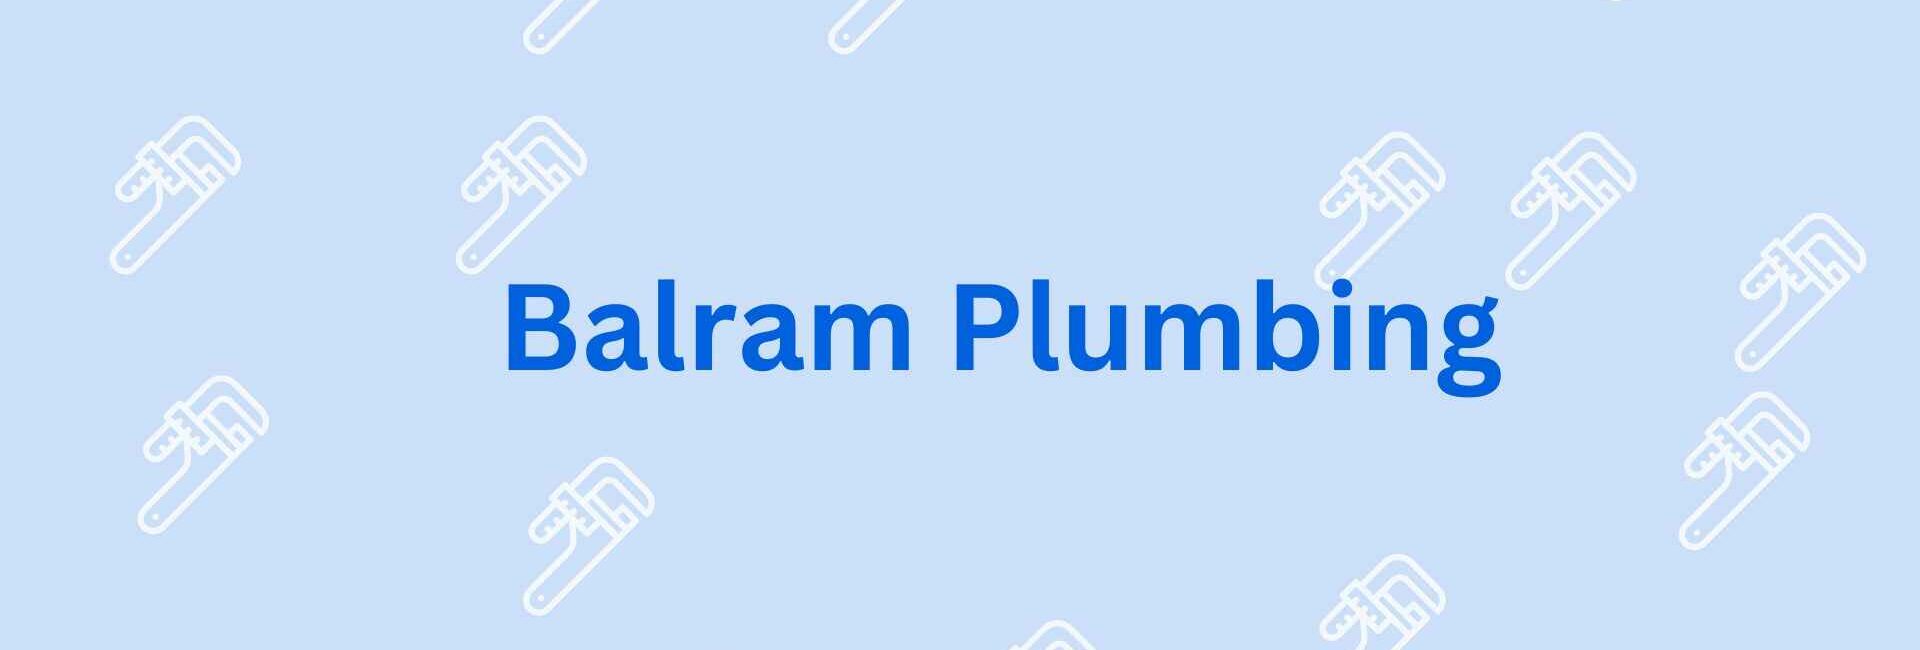 Balram Plumbing - Best Plumber Service Provider in Noida